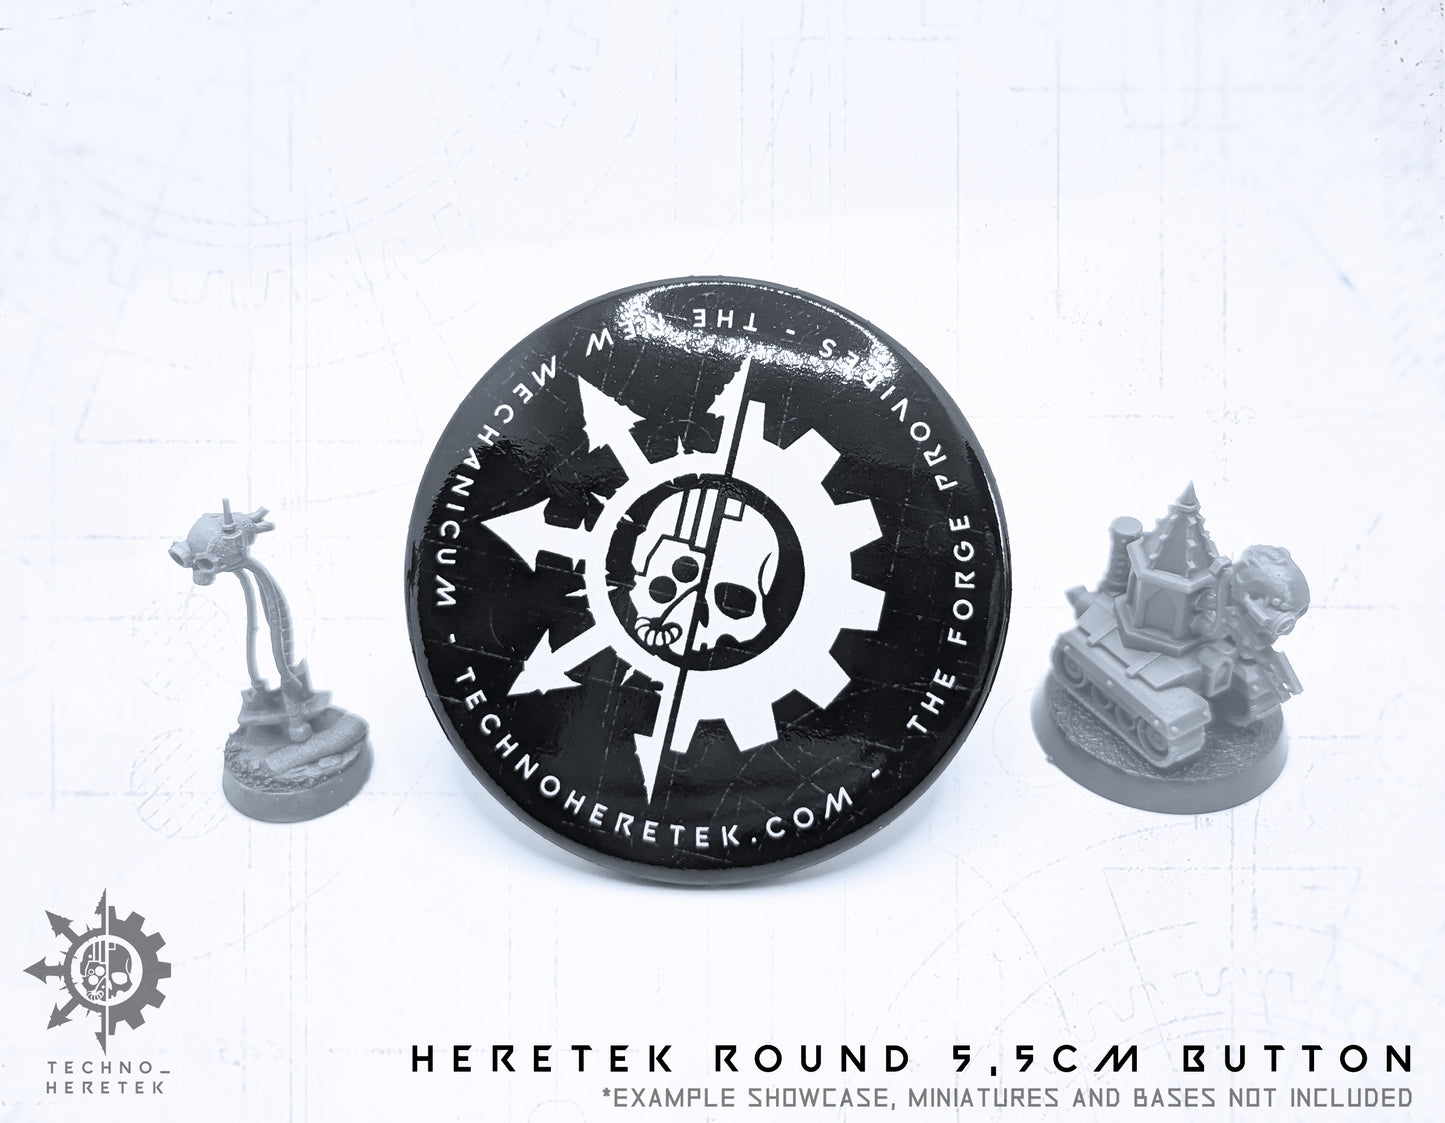 Techno_Heretek Round Button 5,5cm